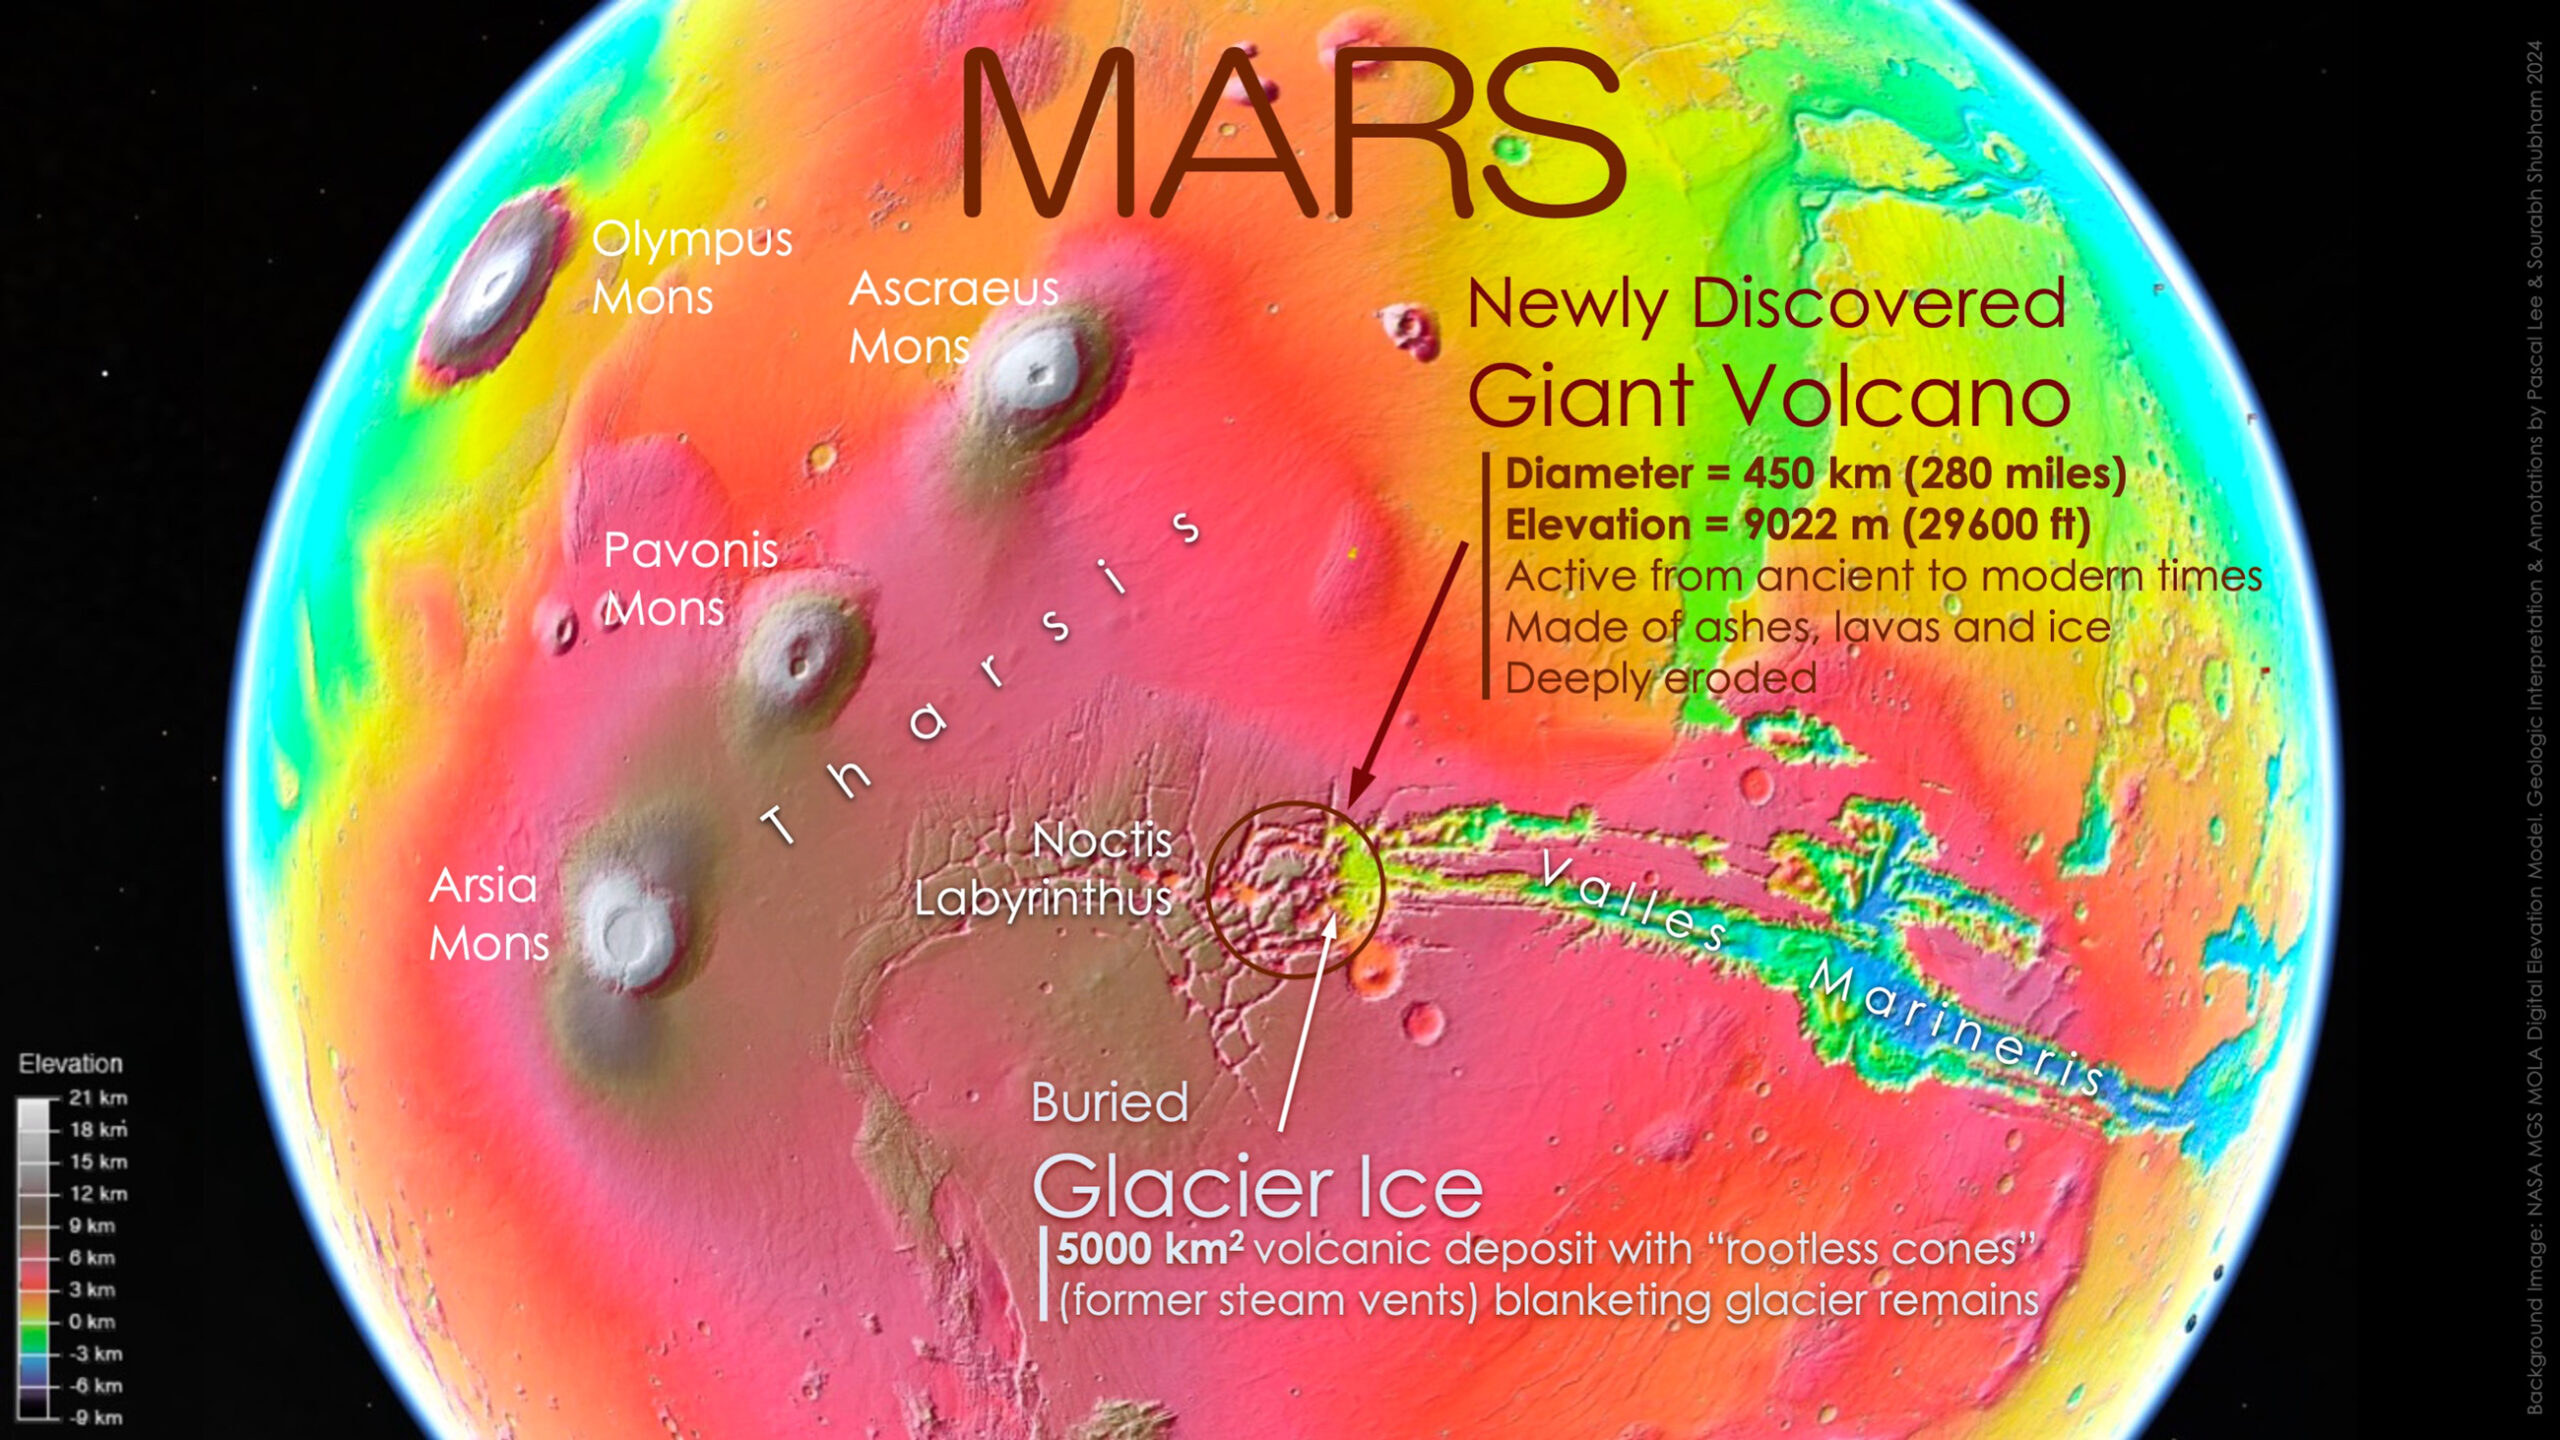 Imagen de Marte a falso color, las regiones blancas muestran los puntos más altos y las azules los más bajos respecto al radio medio del planeta.